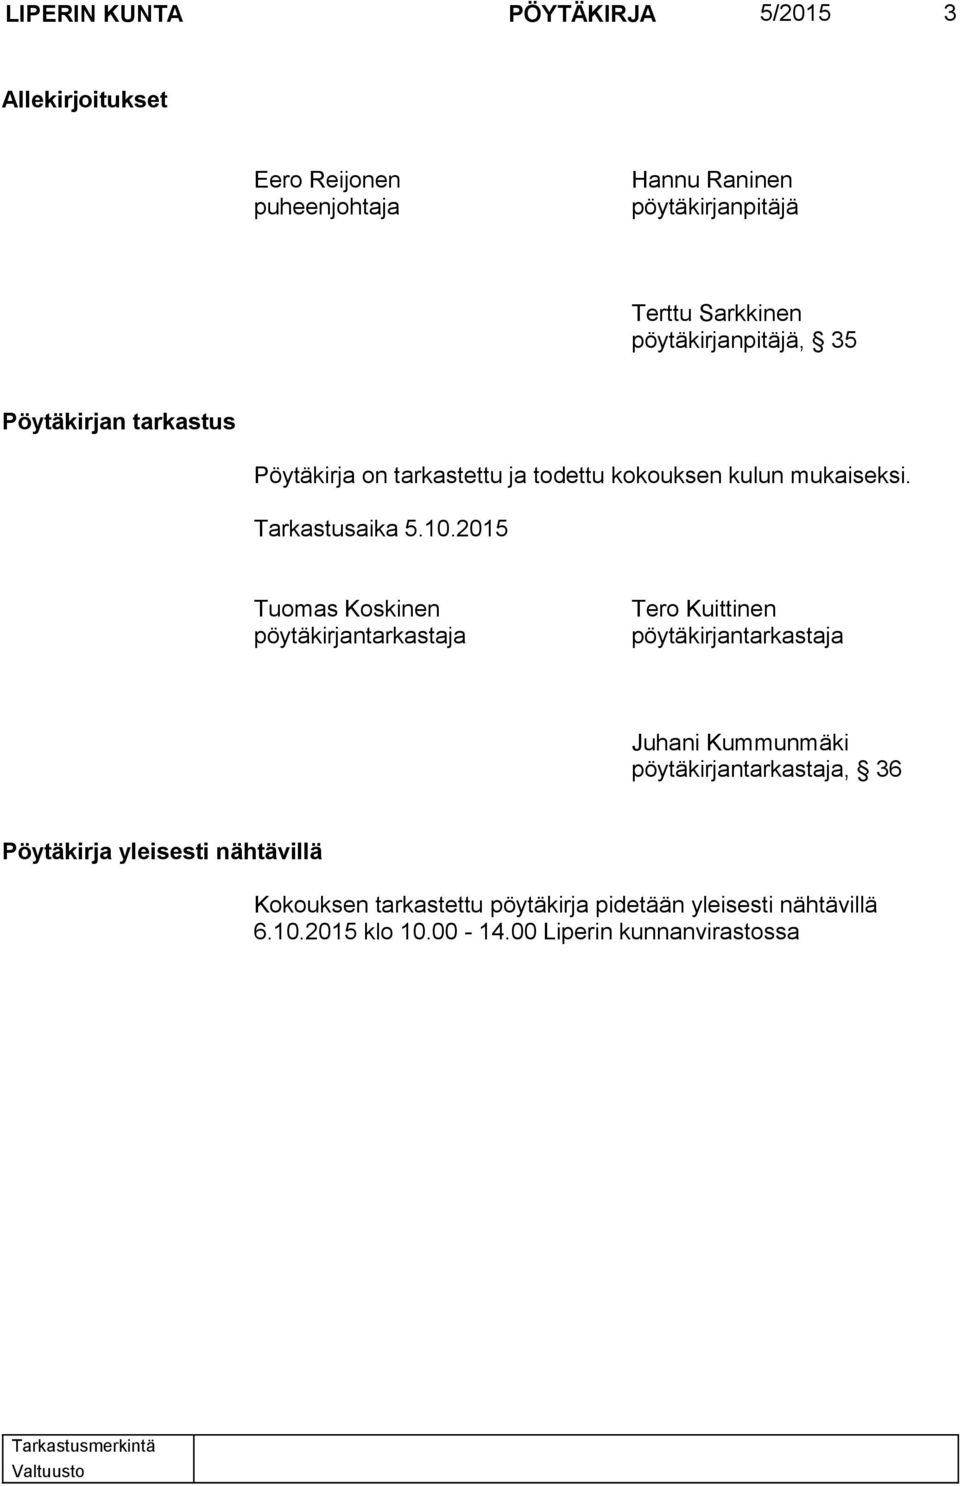 2015 Tuomas Koskinen pöytäkirjantarkastaja Tero Kuittinen pöytäkirjantarkastaja Juhani Kummunmäki pöytäkirjantarkastaja, 36